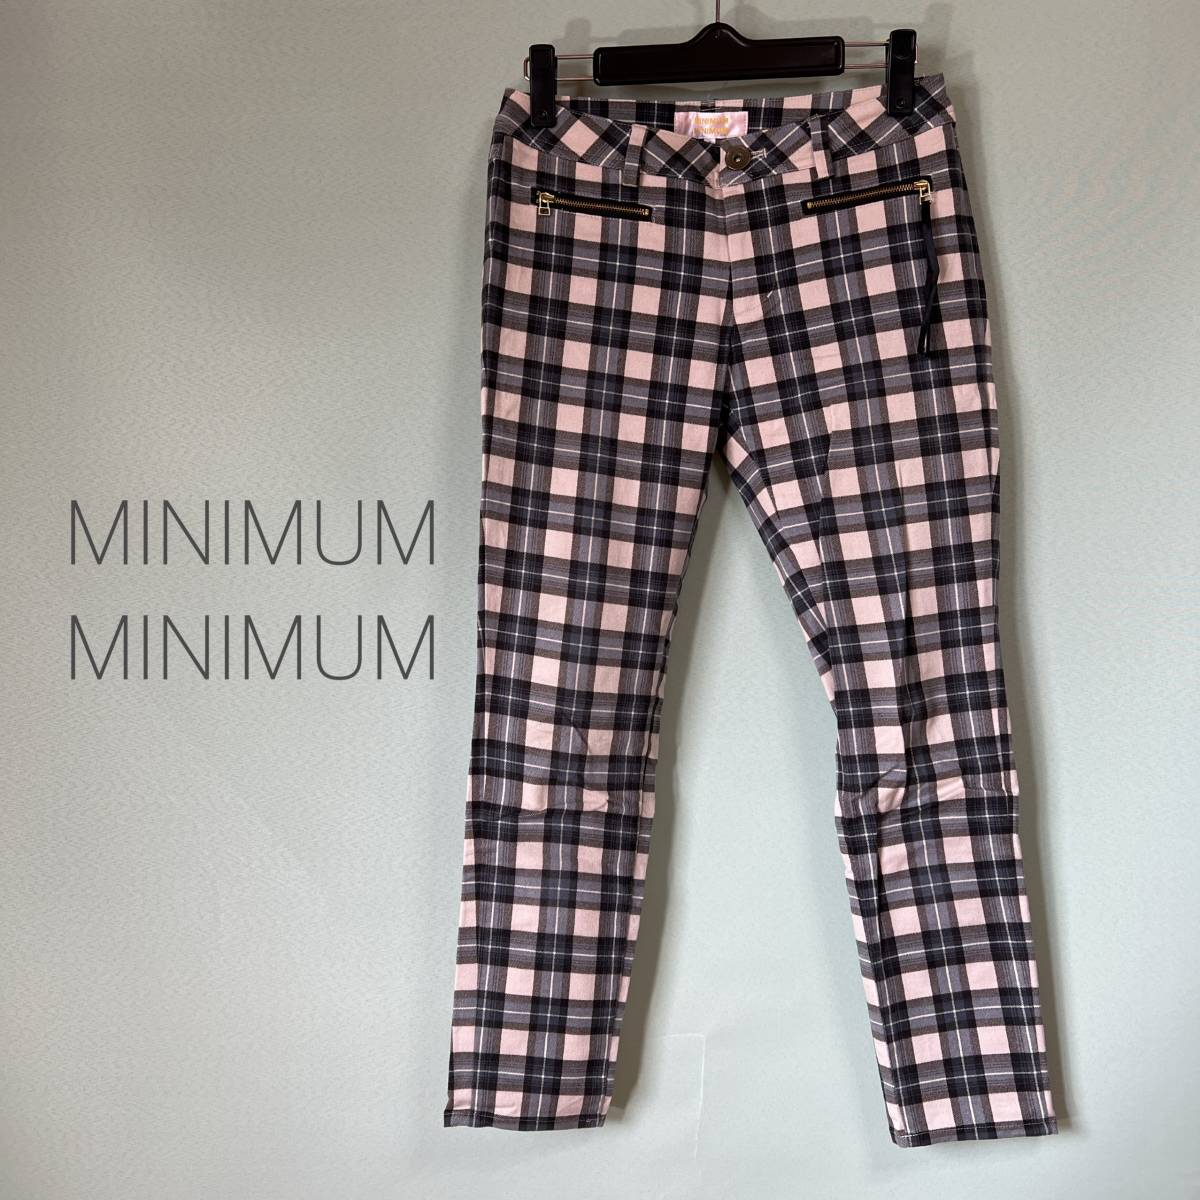 ◎ Минимальный минимальный укороченный брюки для брюк.